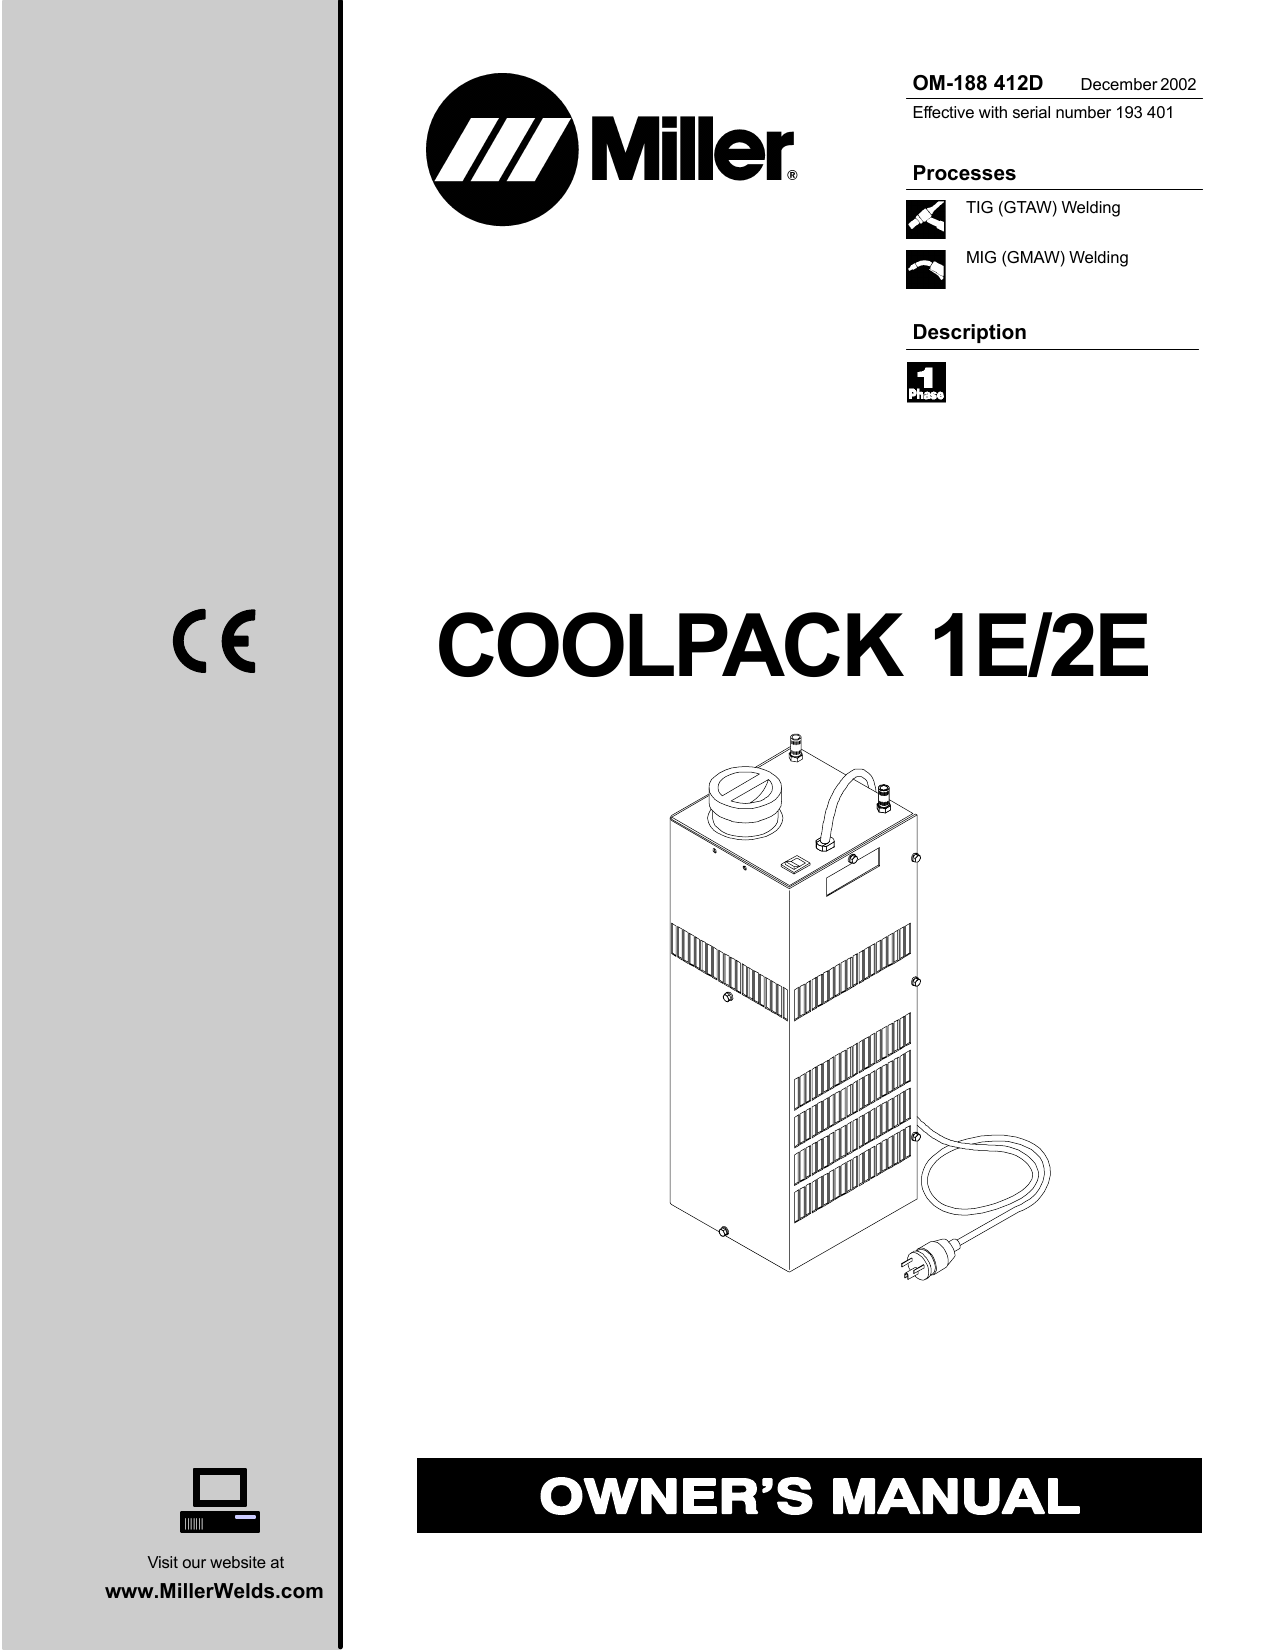 coolpack for welding hoods